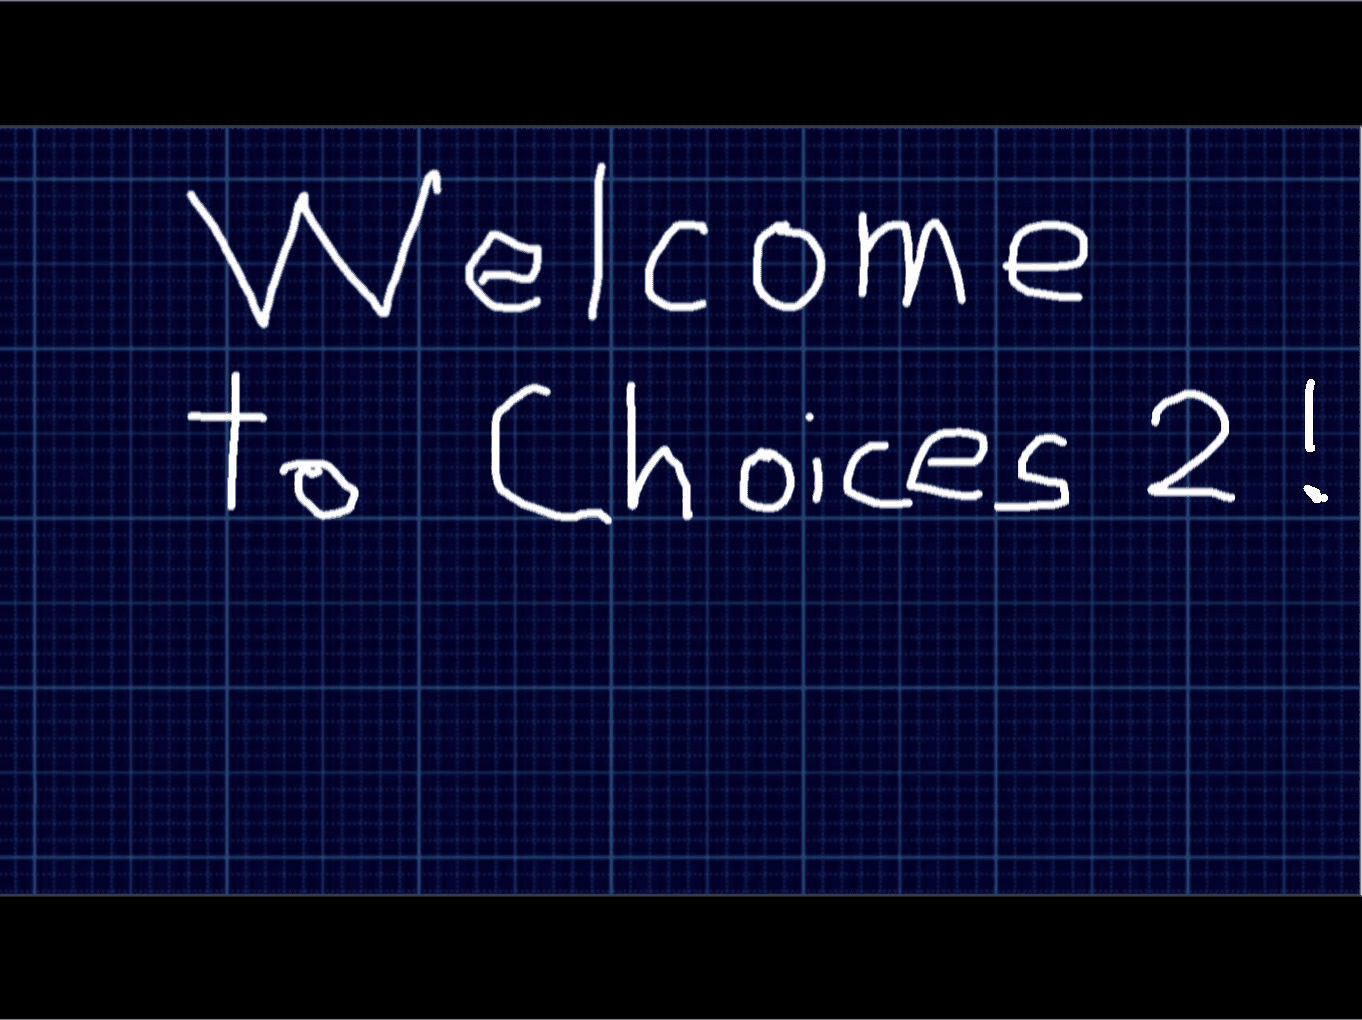 Choices 2 advanced